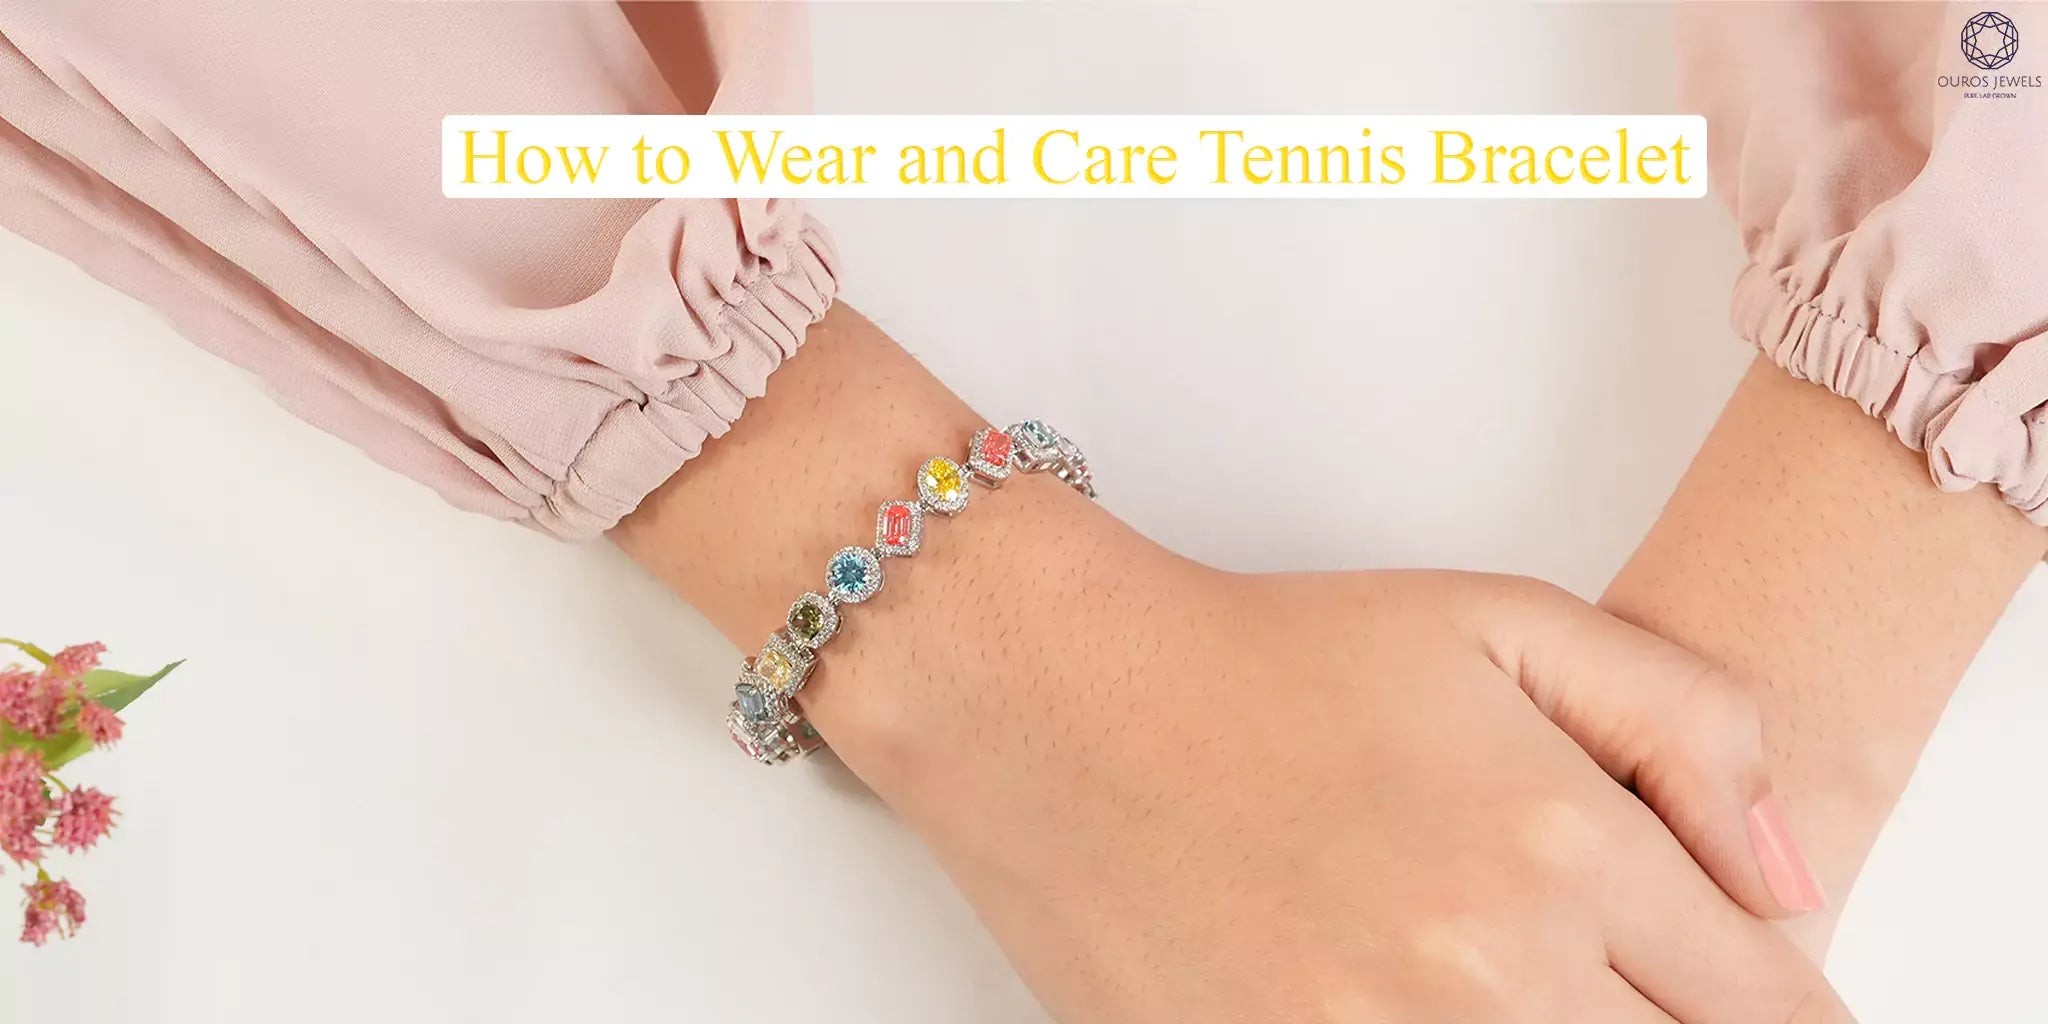 Tipps zum Tragen eines Tennisarmbands für ein angenehmes Tragegefühl am Handgelenk bei jeder Kleidung